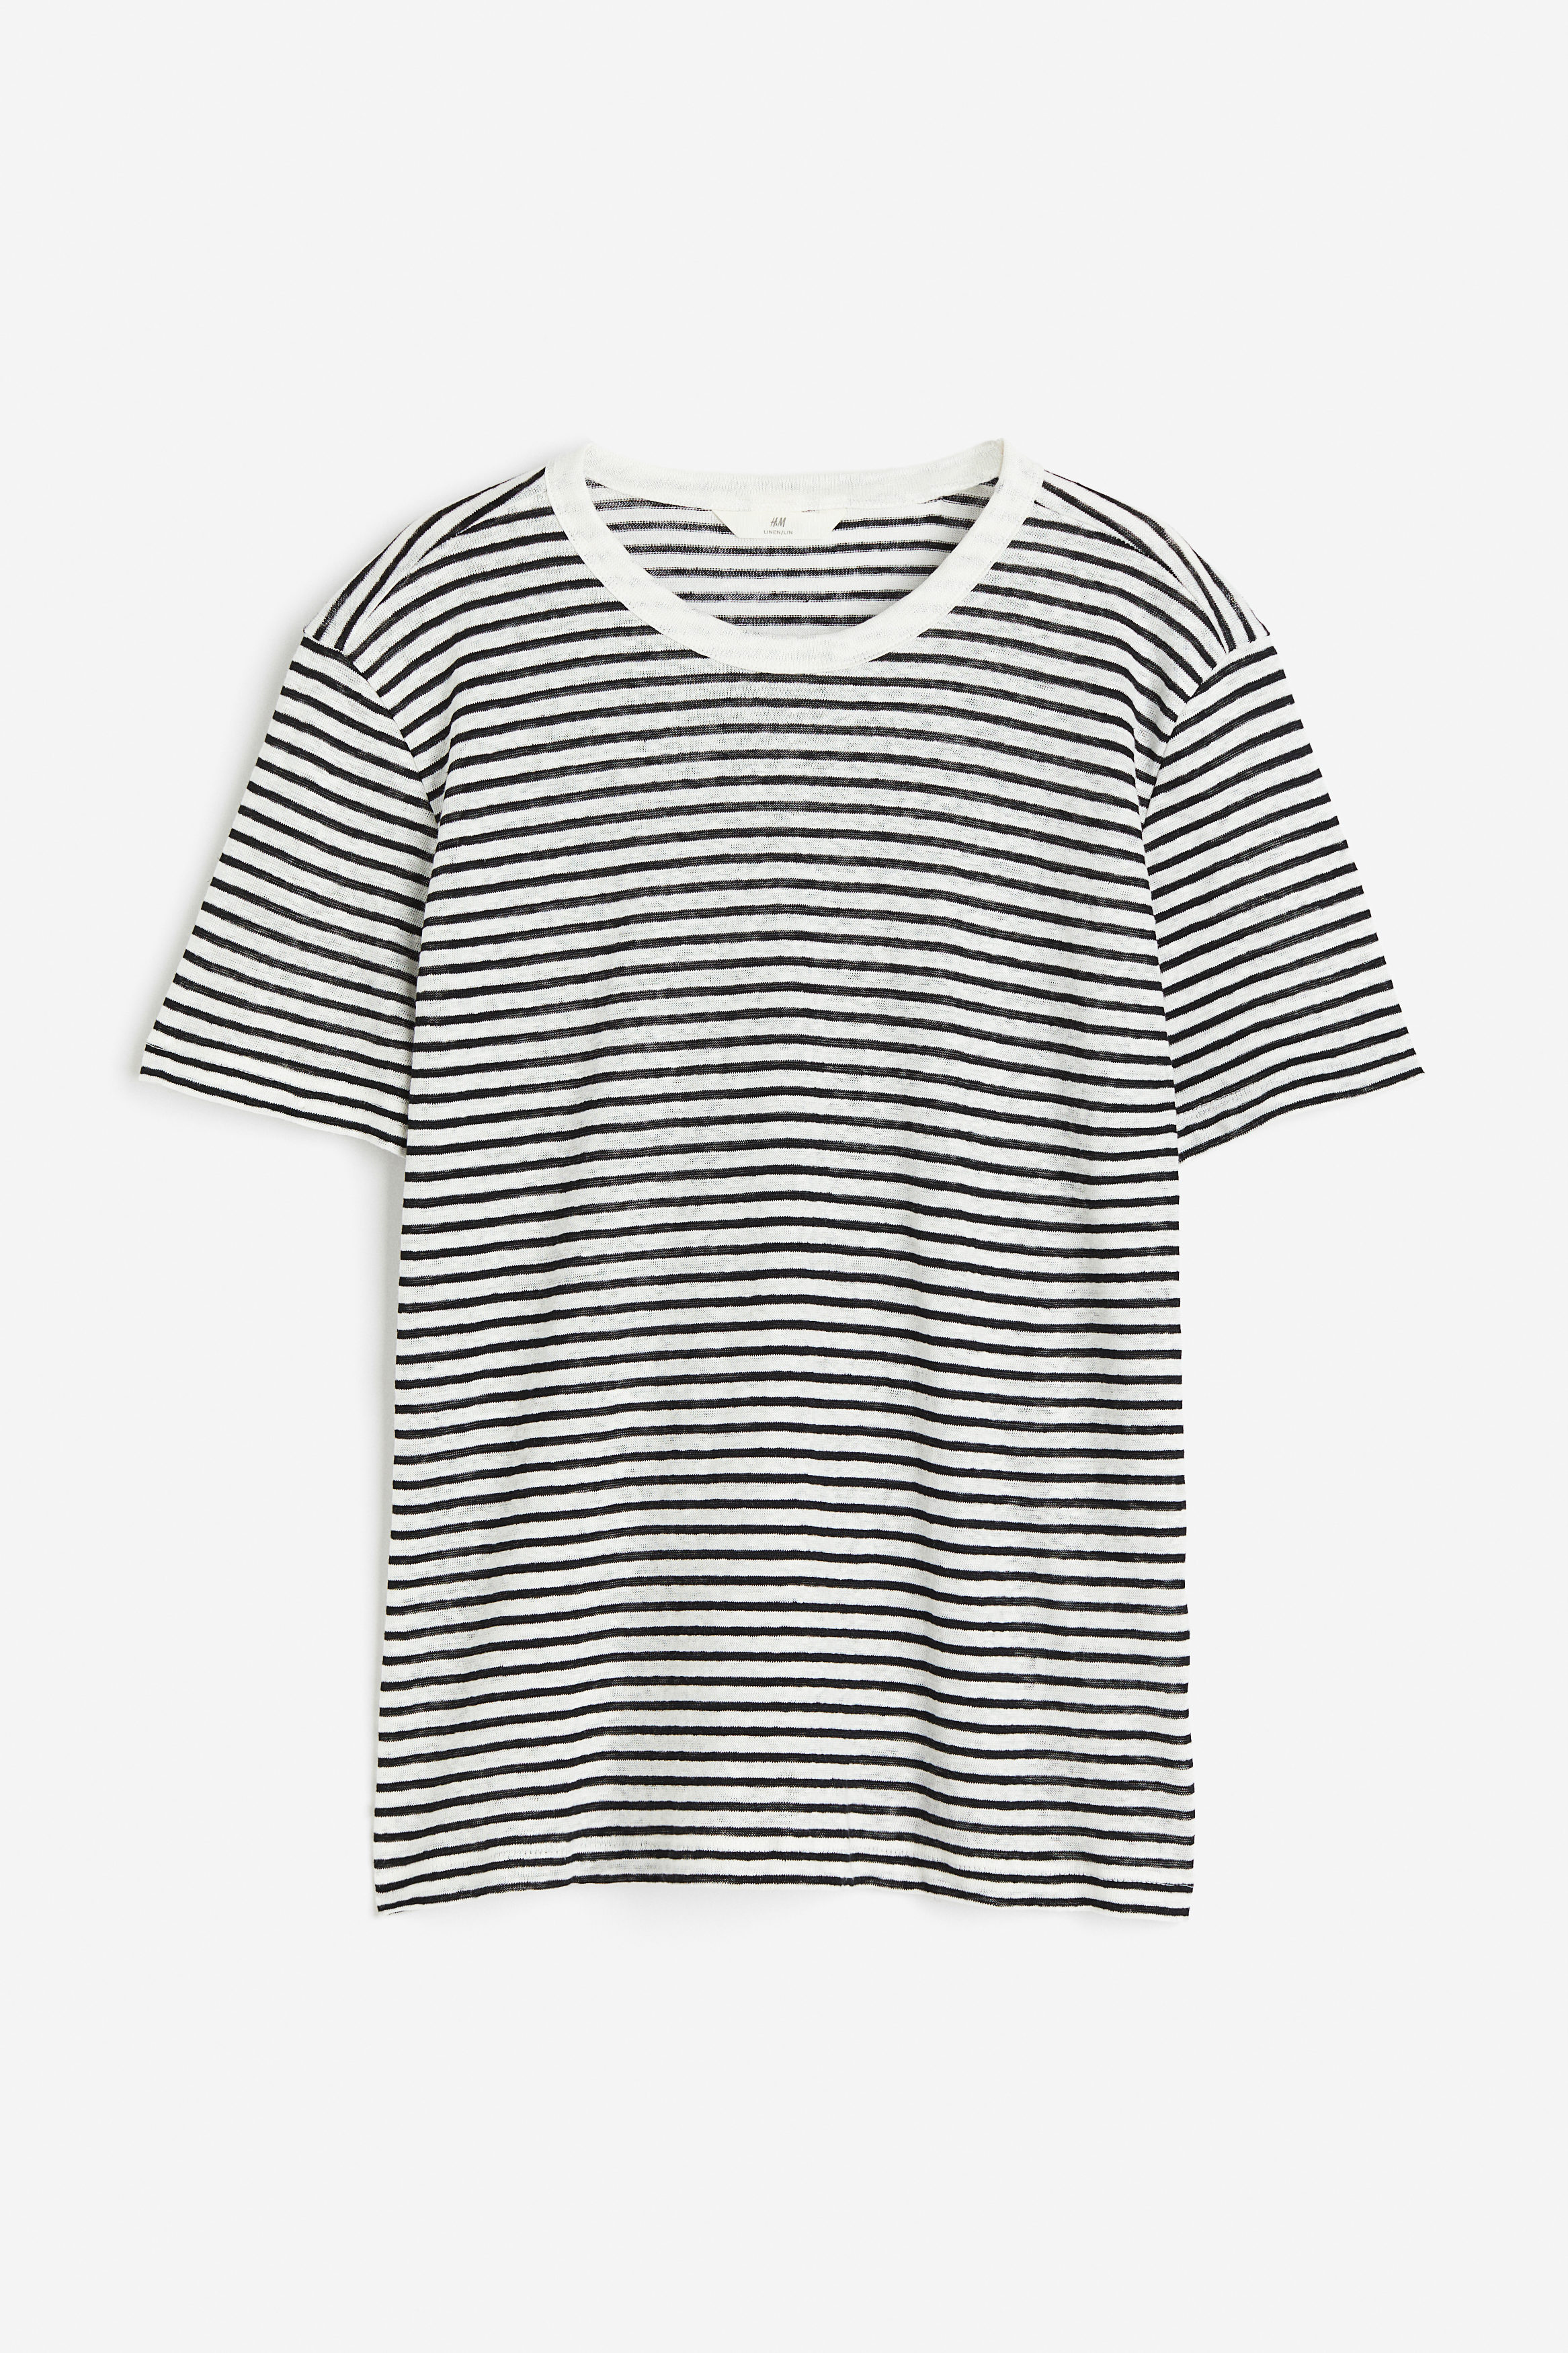 Billede af H&M T-shirt I Hør Hvid/sortstribet, T-shirts. Farve: White/black striped størrelse XS